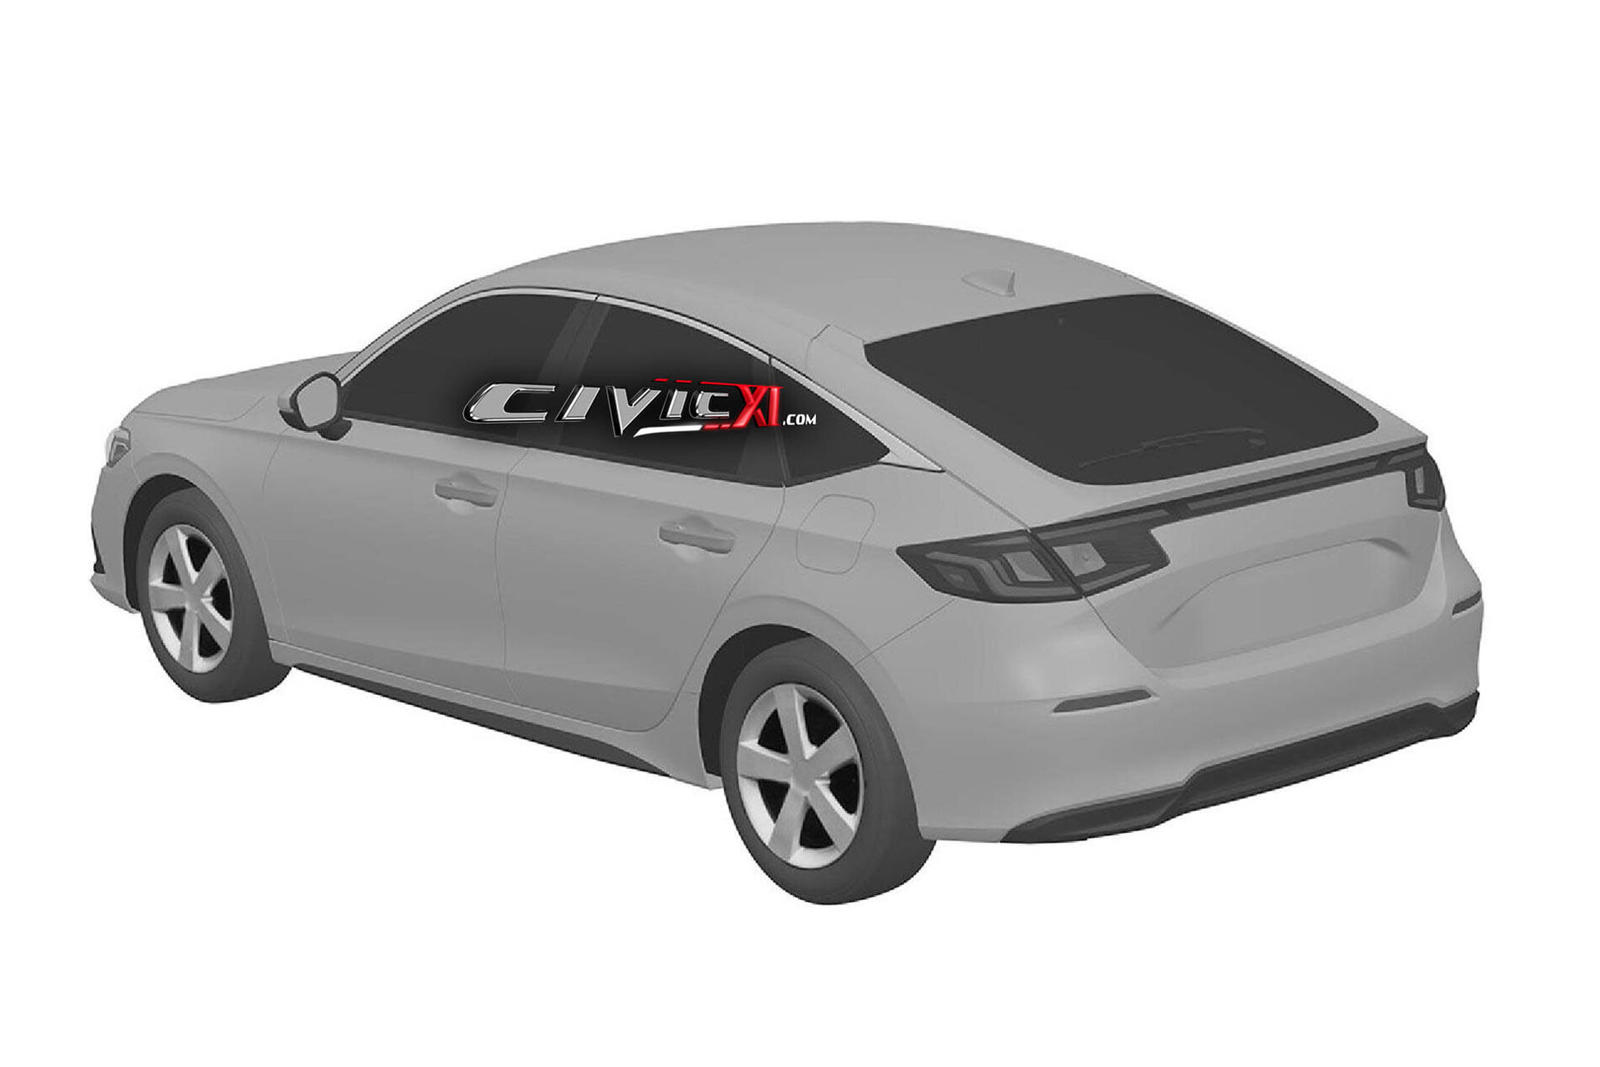 Новый хэтчбек Civic также выглядит длиннее и ниже, чем текущая модель, с более гладким кузовом и упрощенным дизайном.